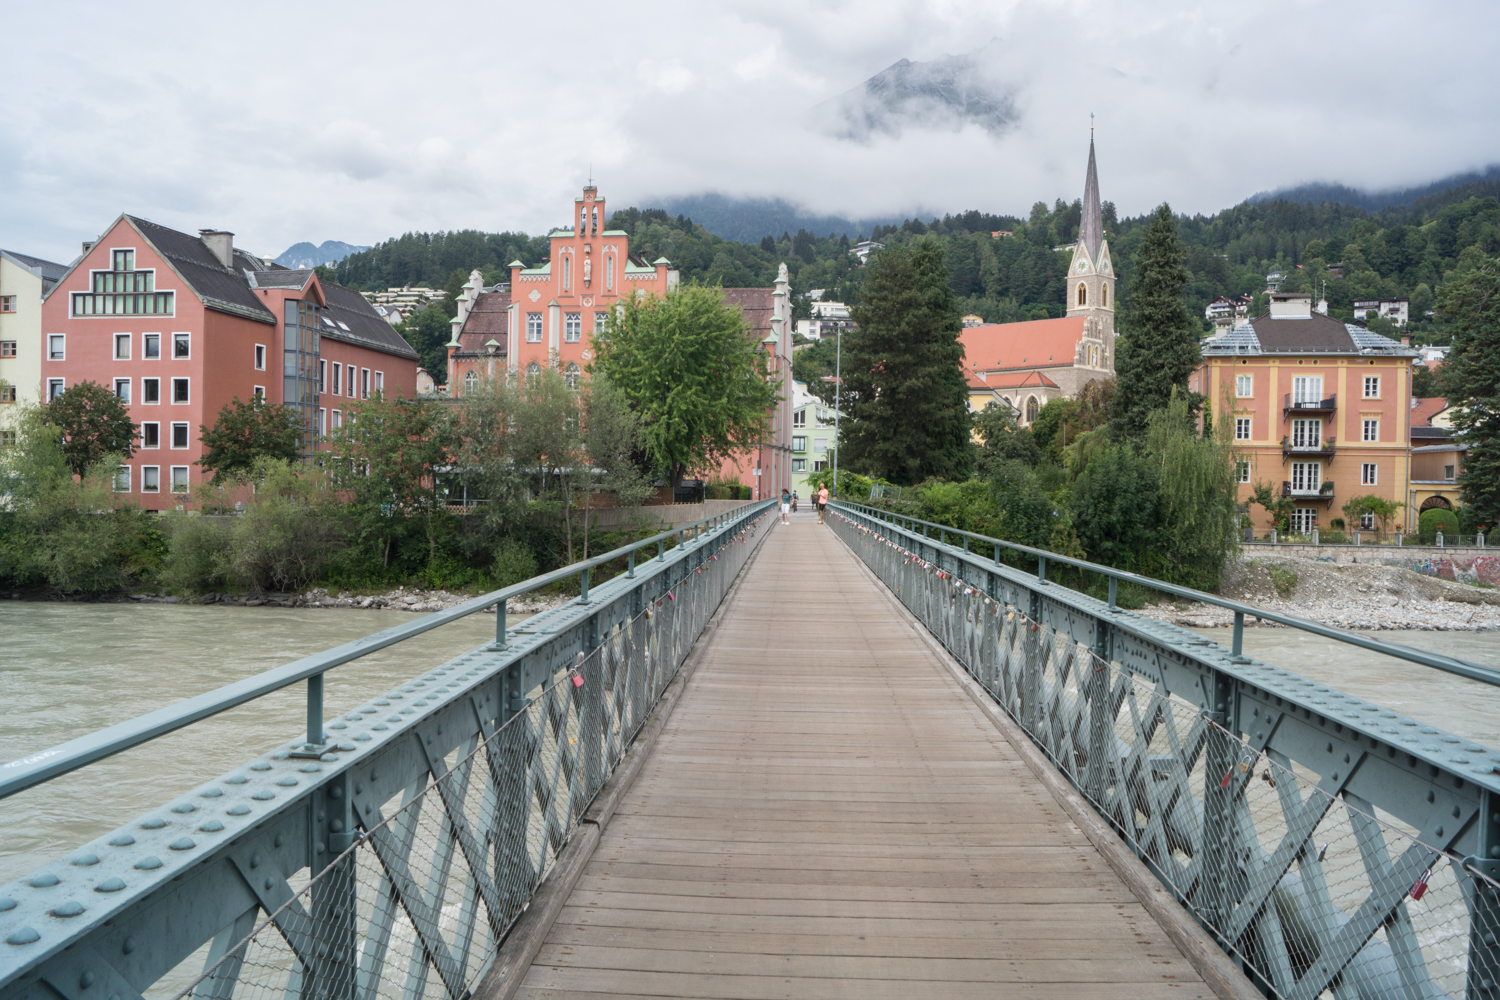 Innsbruck Reise-Guide: Reisezeit, Sehenswürdigkeiten, Tipps: Alles, was du für deinen Urlaub in Innsbruck wissen musst!